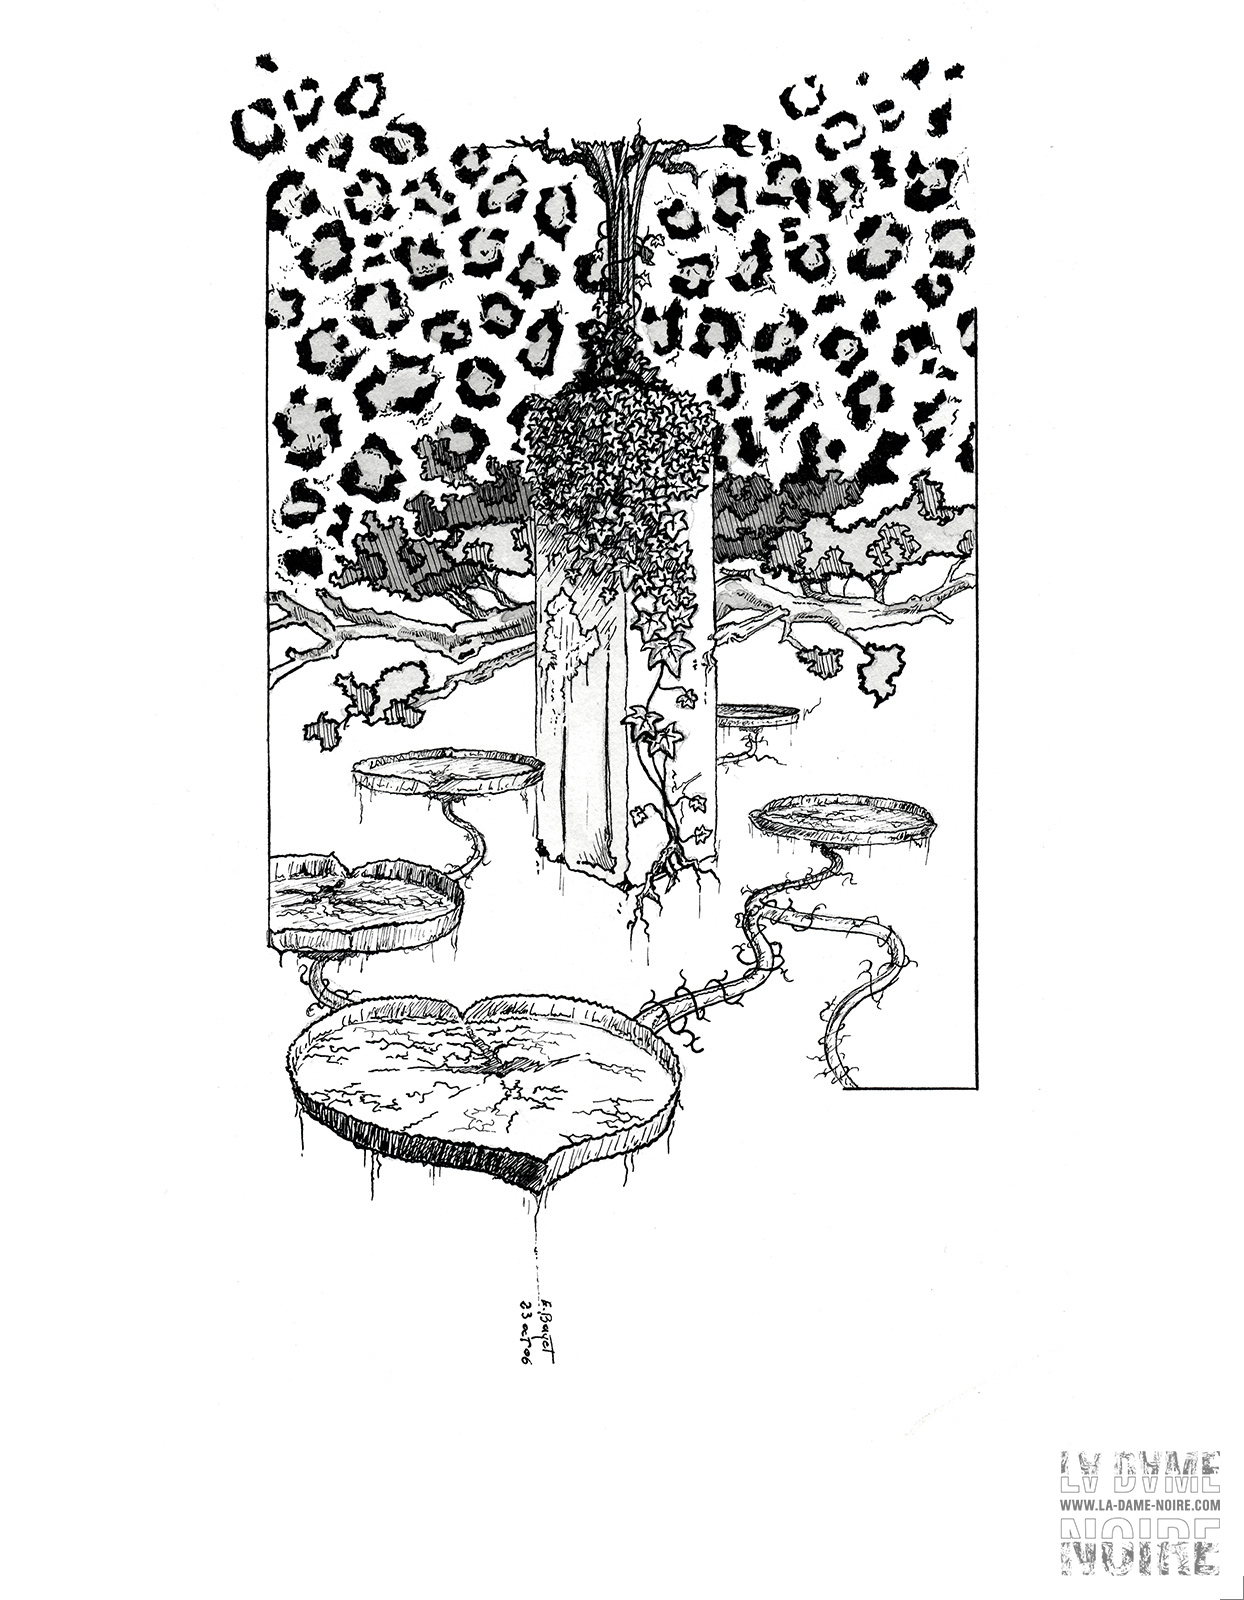 Illustration sur la végétation avec texture animale